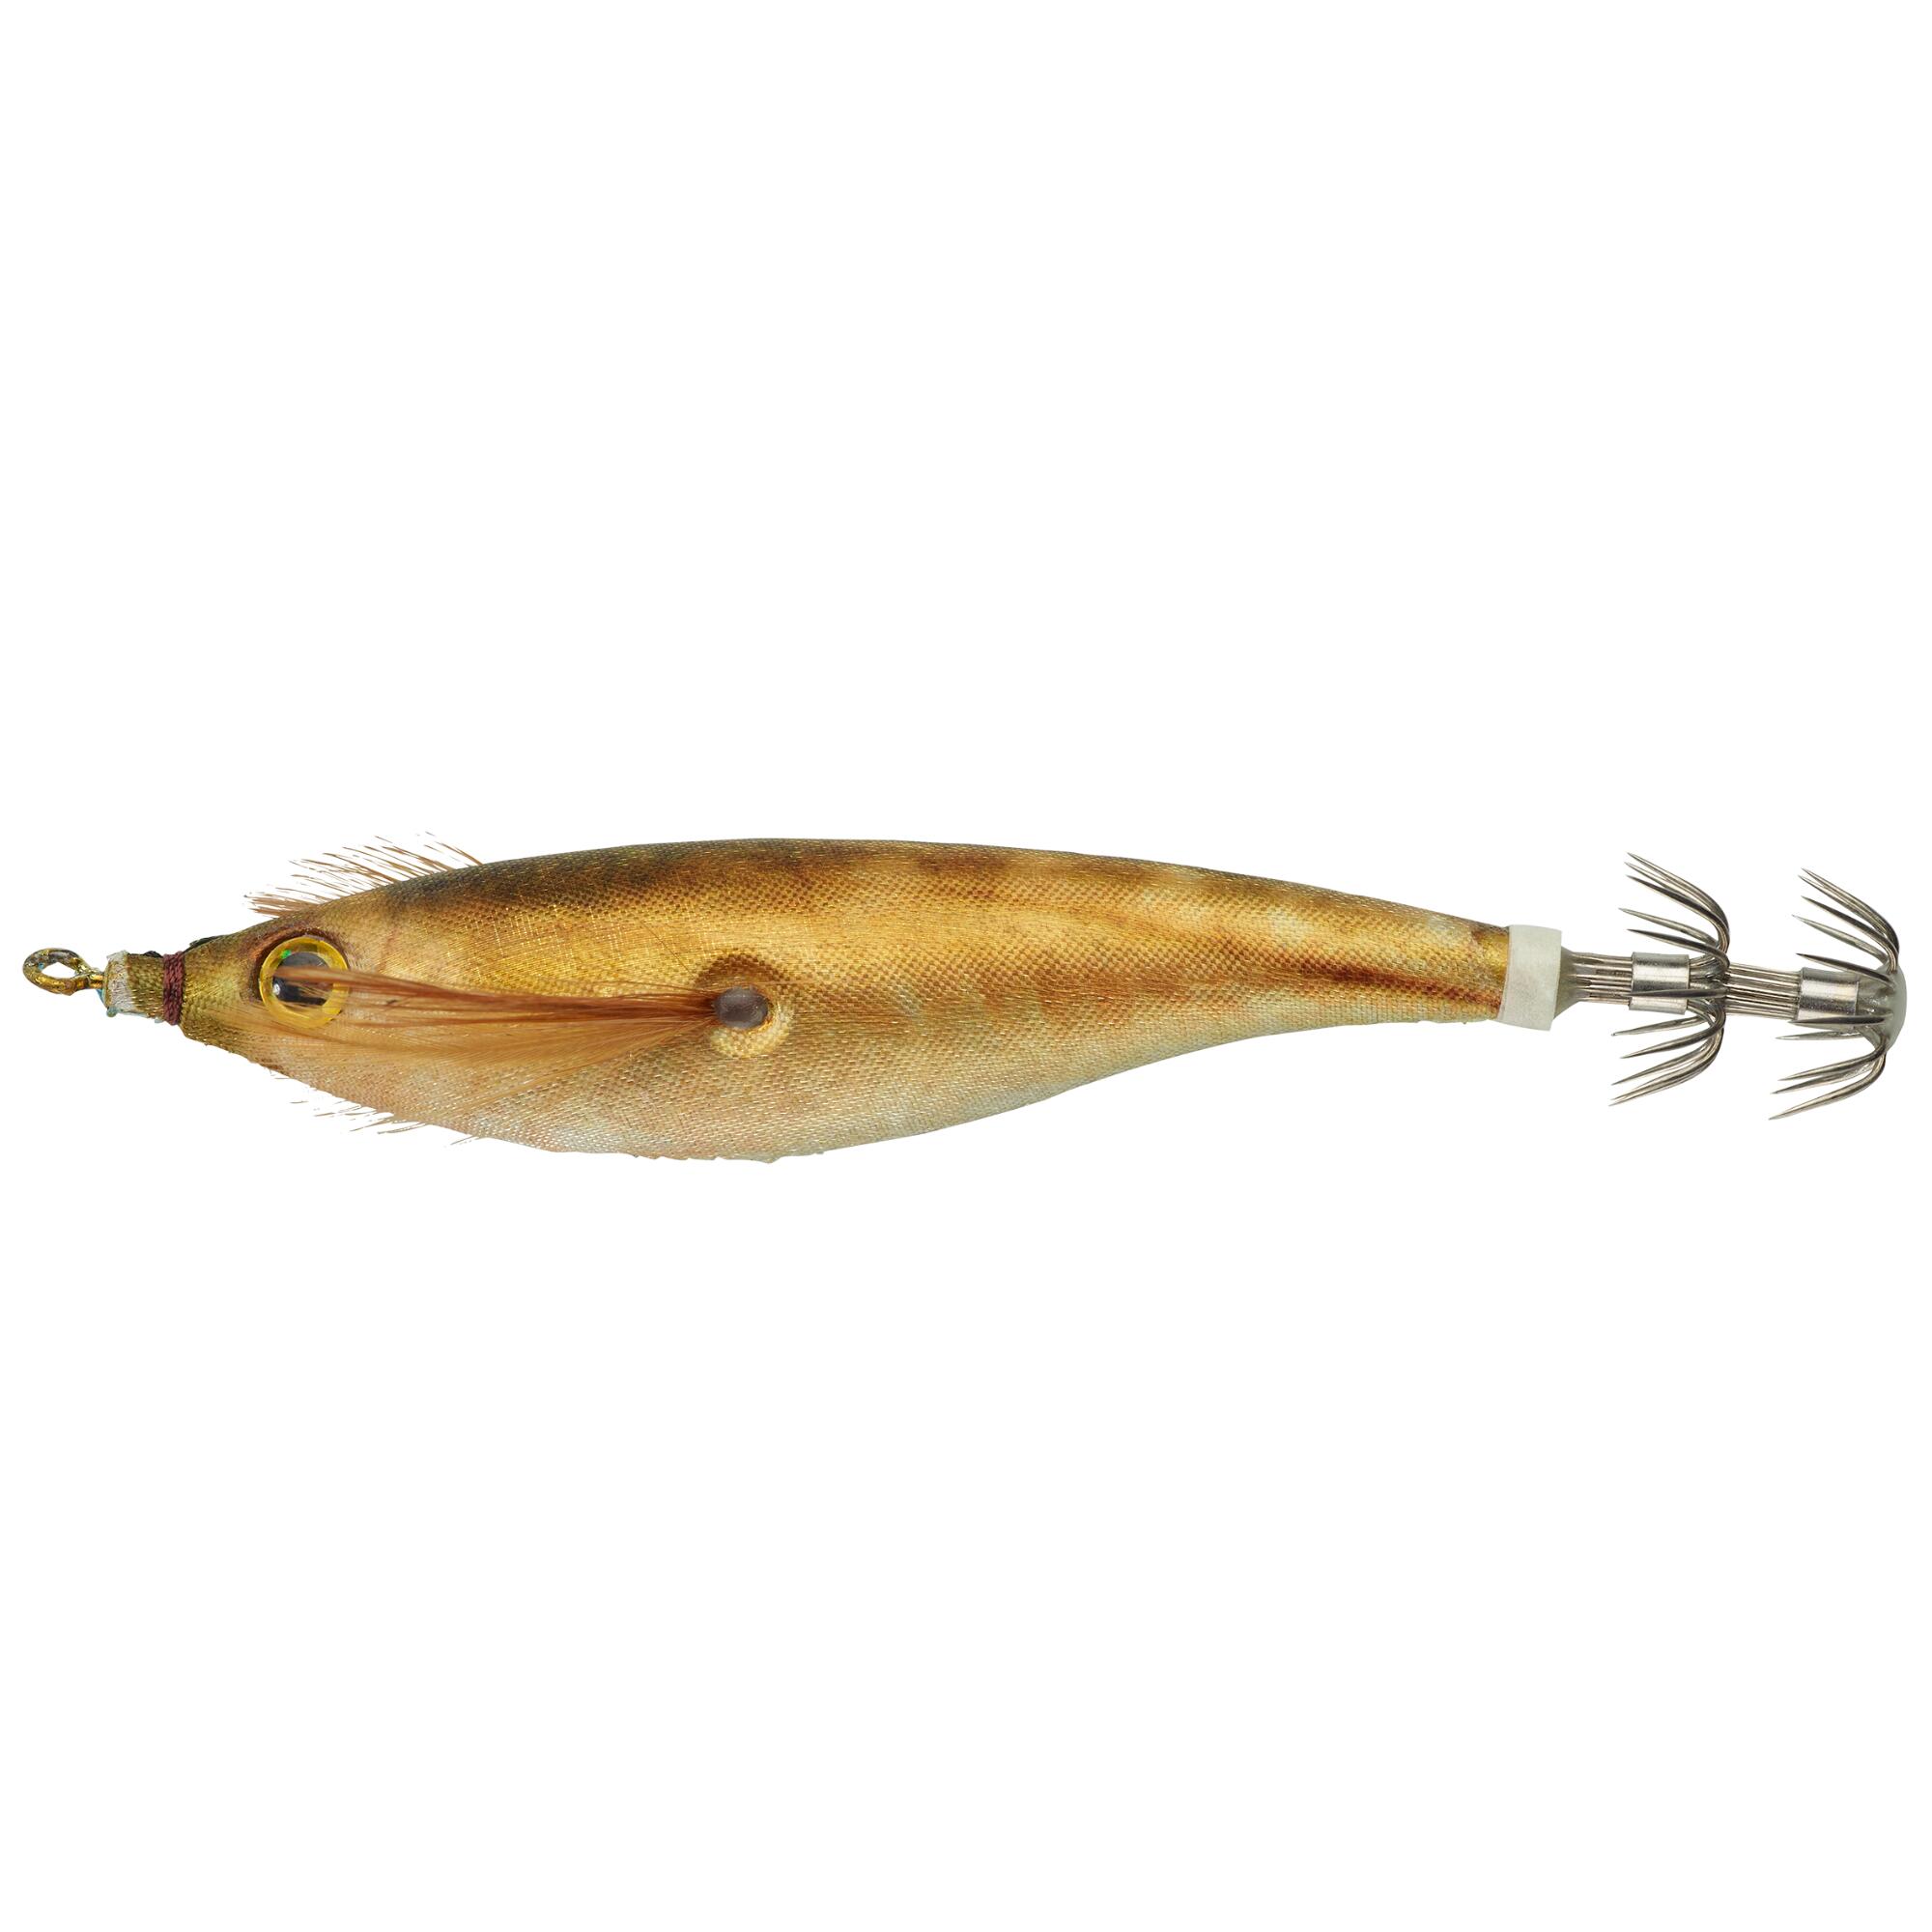 NÄƒlucÄƒ EBIFLO 2,5/110 Blue sardine pescuit la calamari